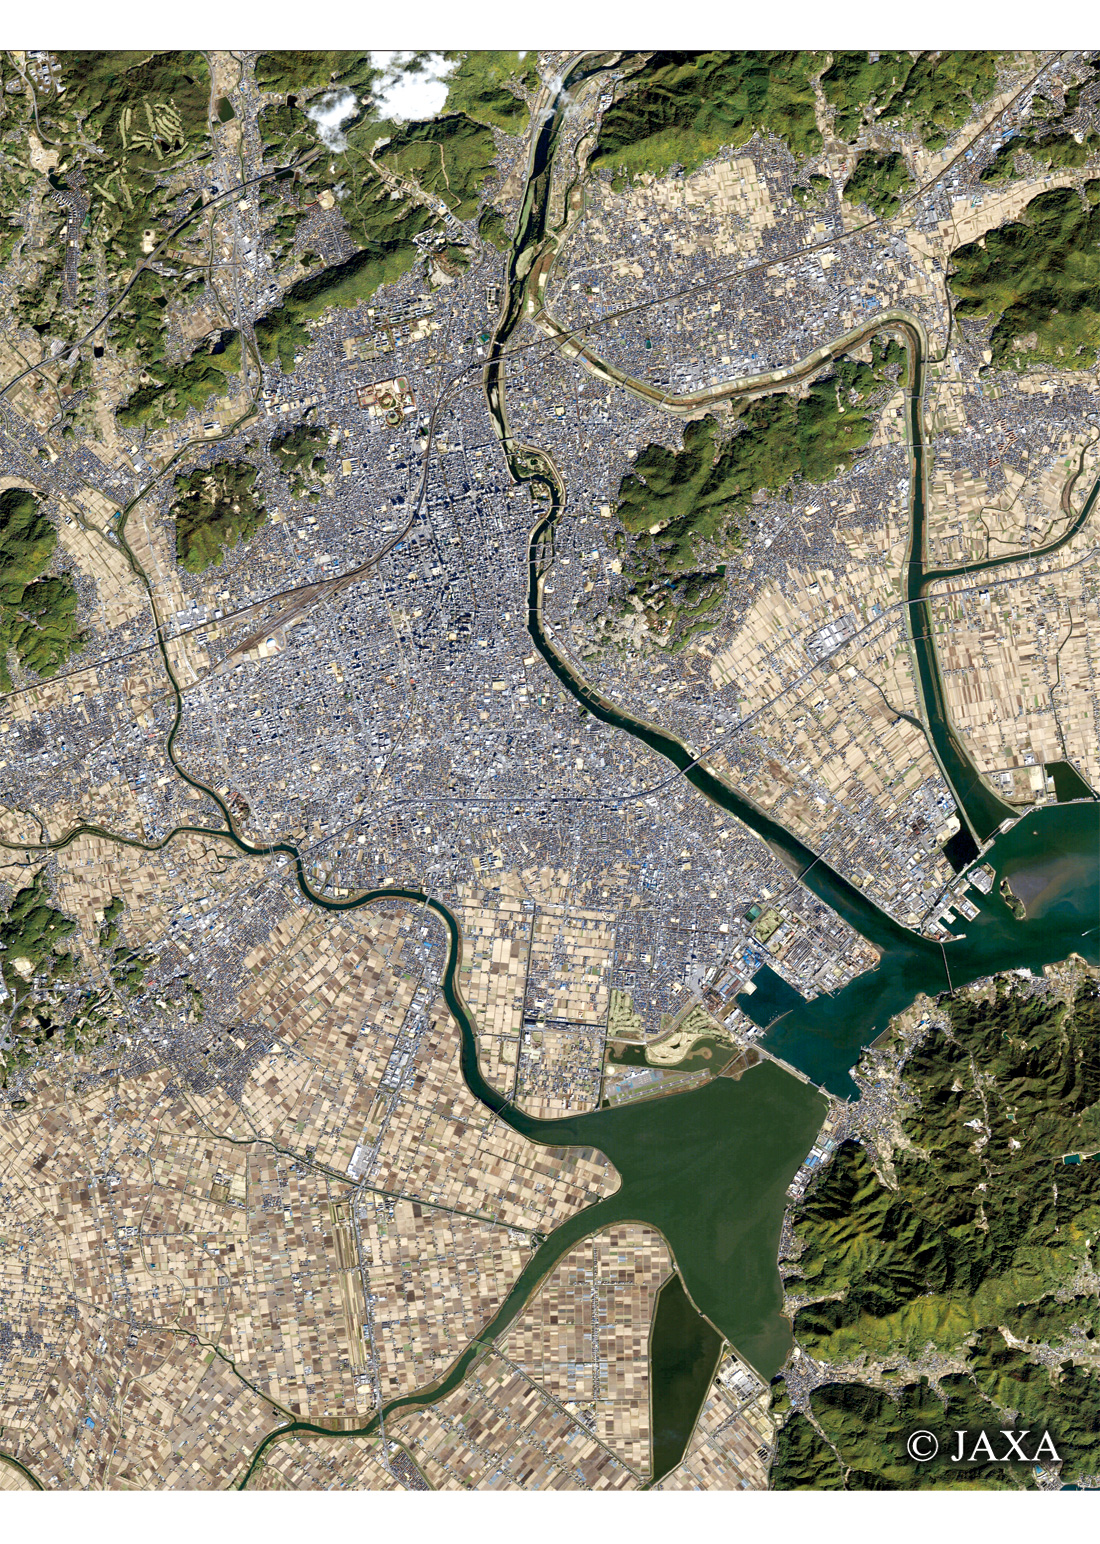 だいちから見た日本の都市 岡山県庁周辺:衛星画像